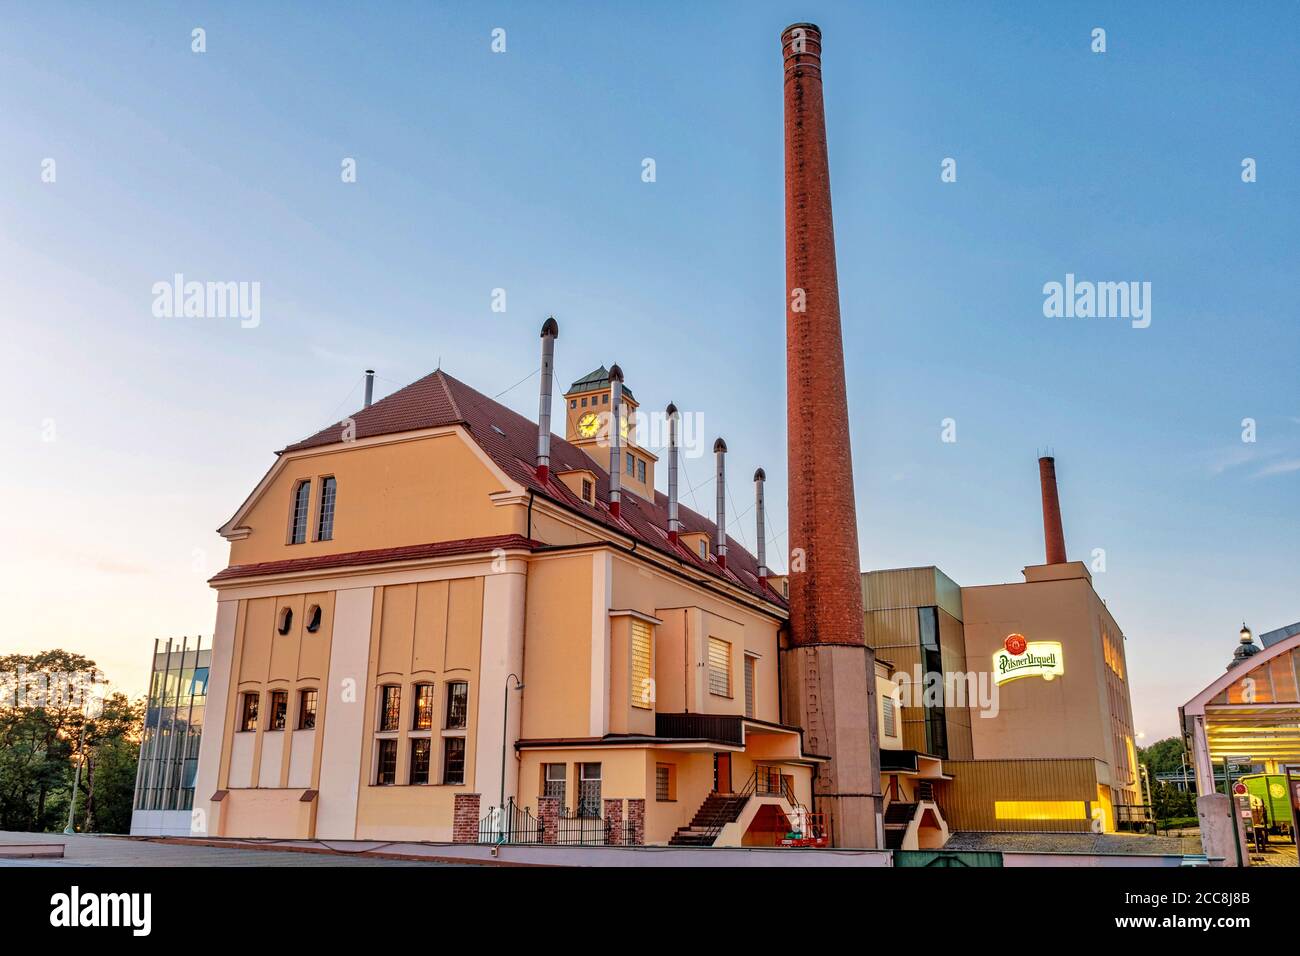 Pilsen, République tchèque - 8 août 2020 : vue sur les bâtiments historiques de la brasserie Pilsner Urquell. Le logo de la société est clairement visible. Banque D'Images